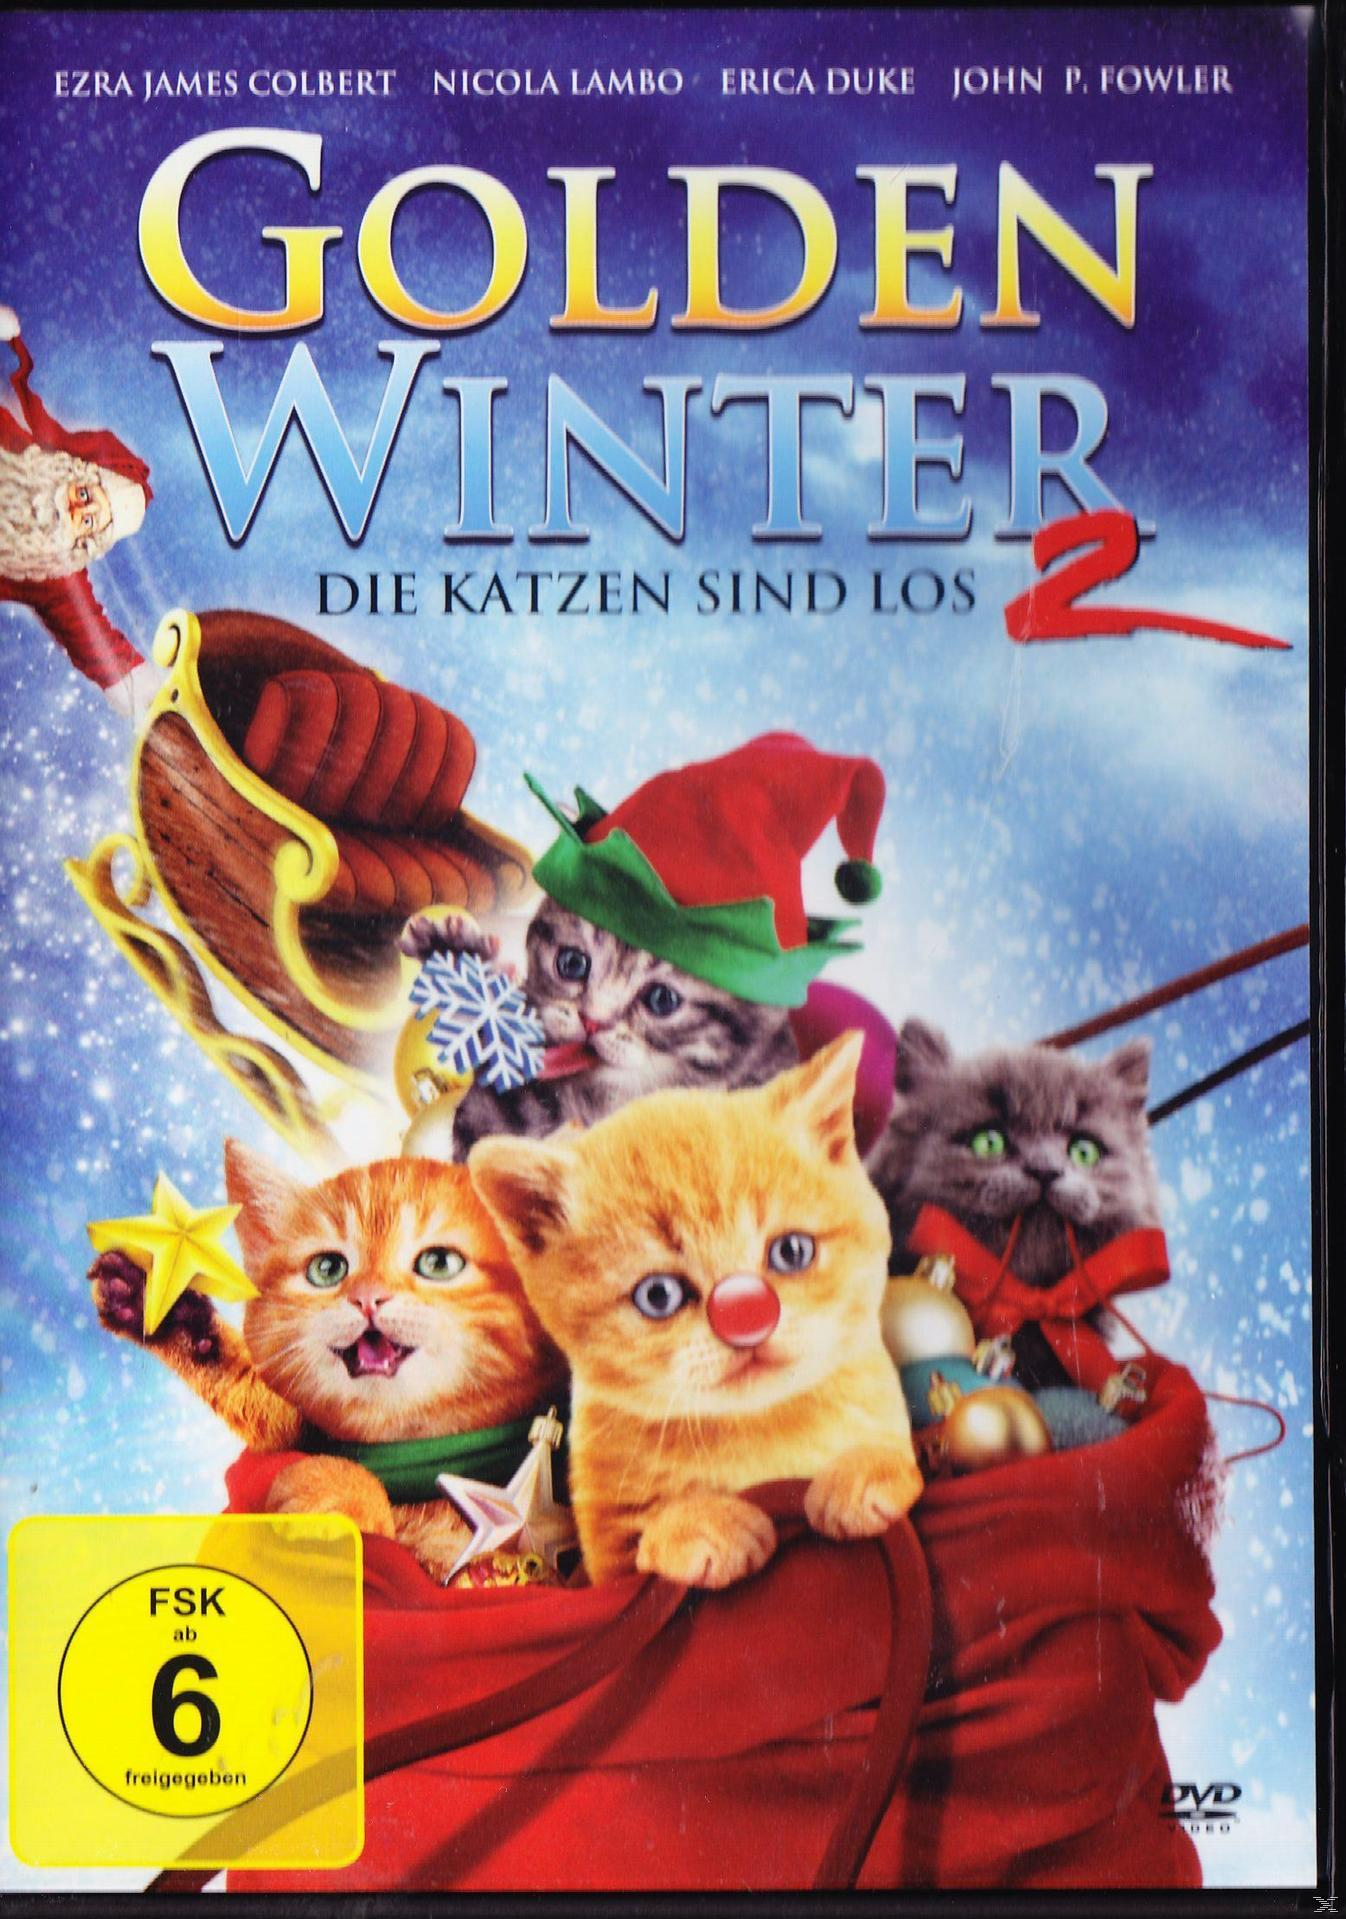 Die Winter Katzen los - Golden sind DVD 2